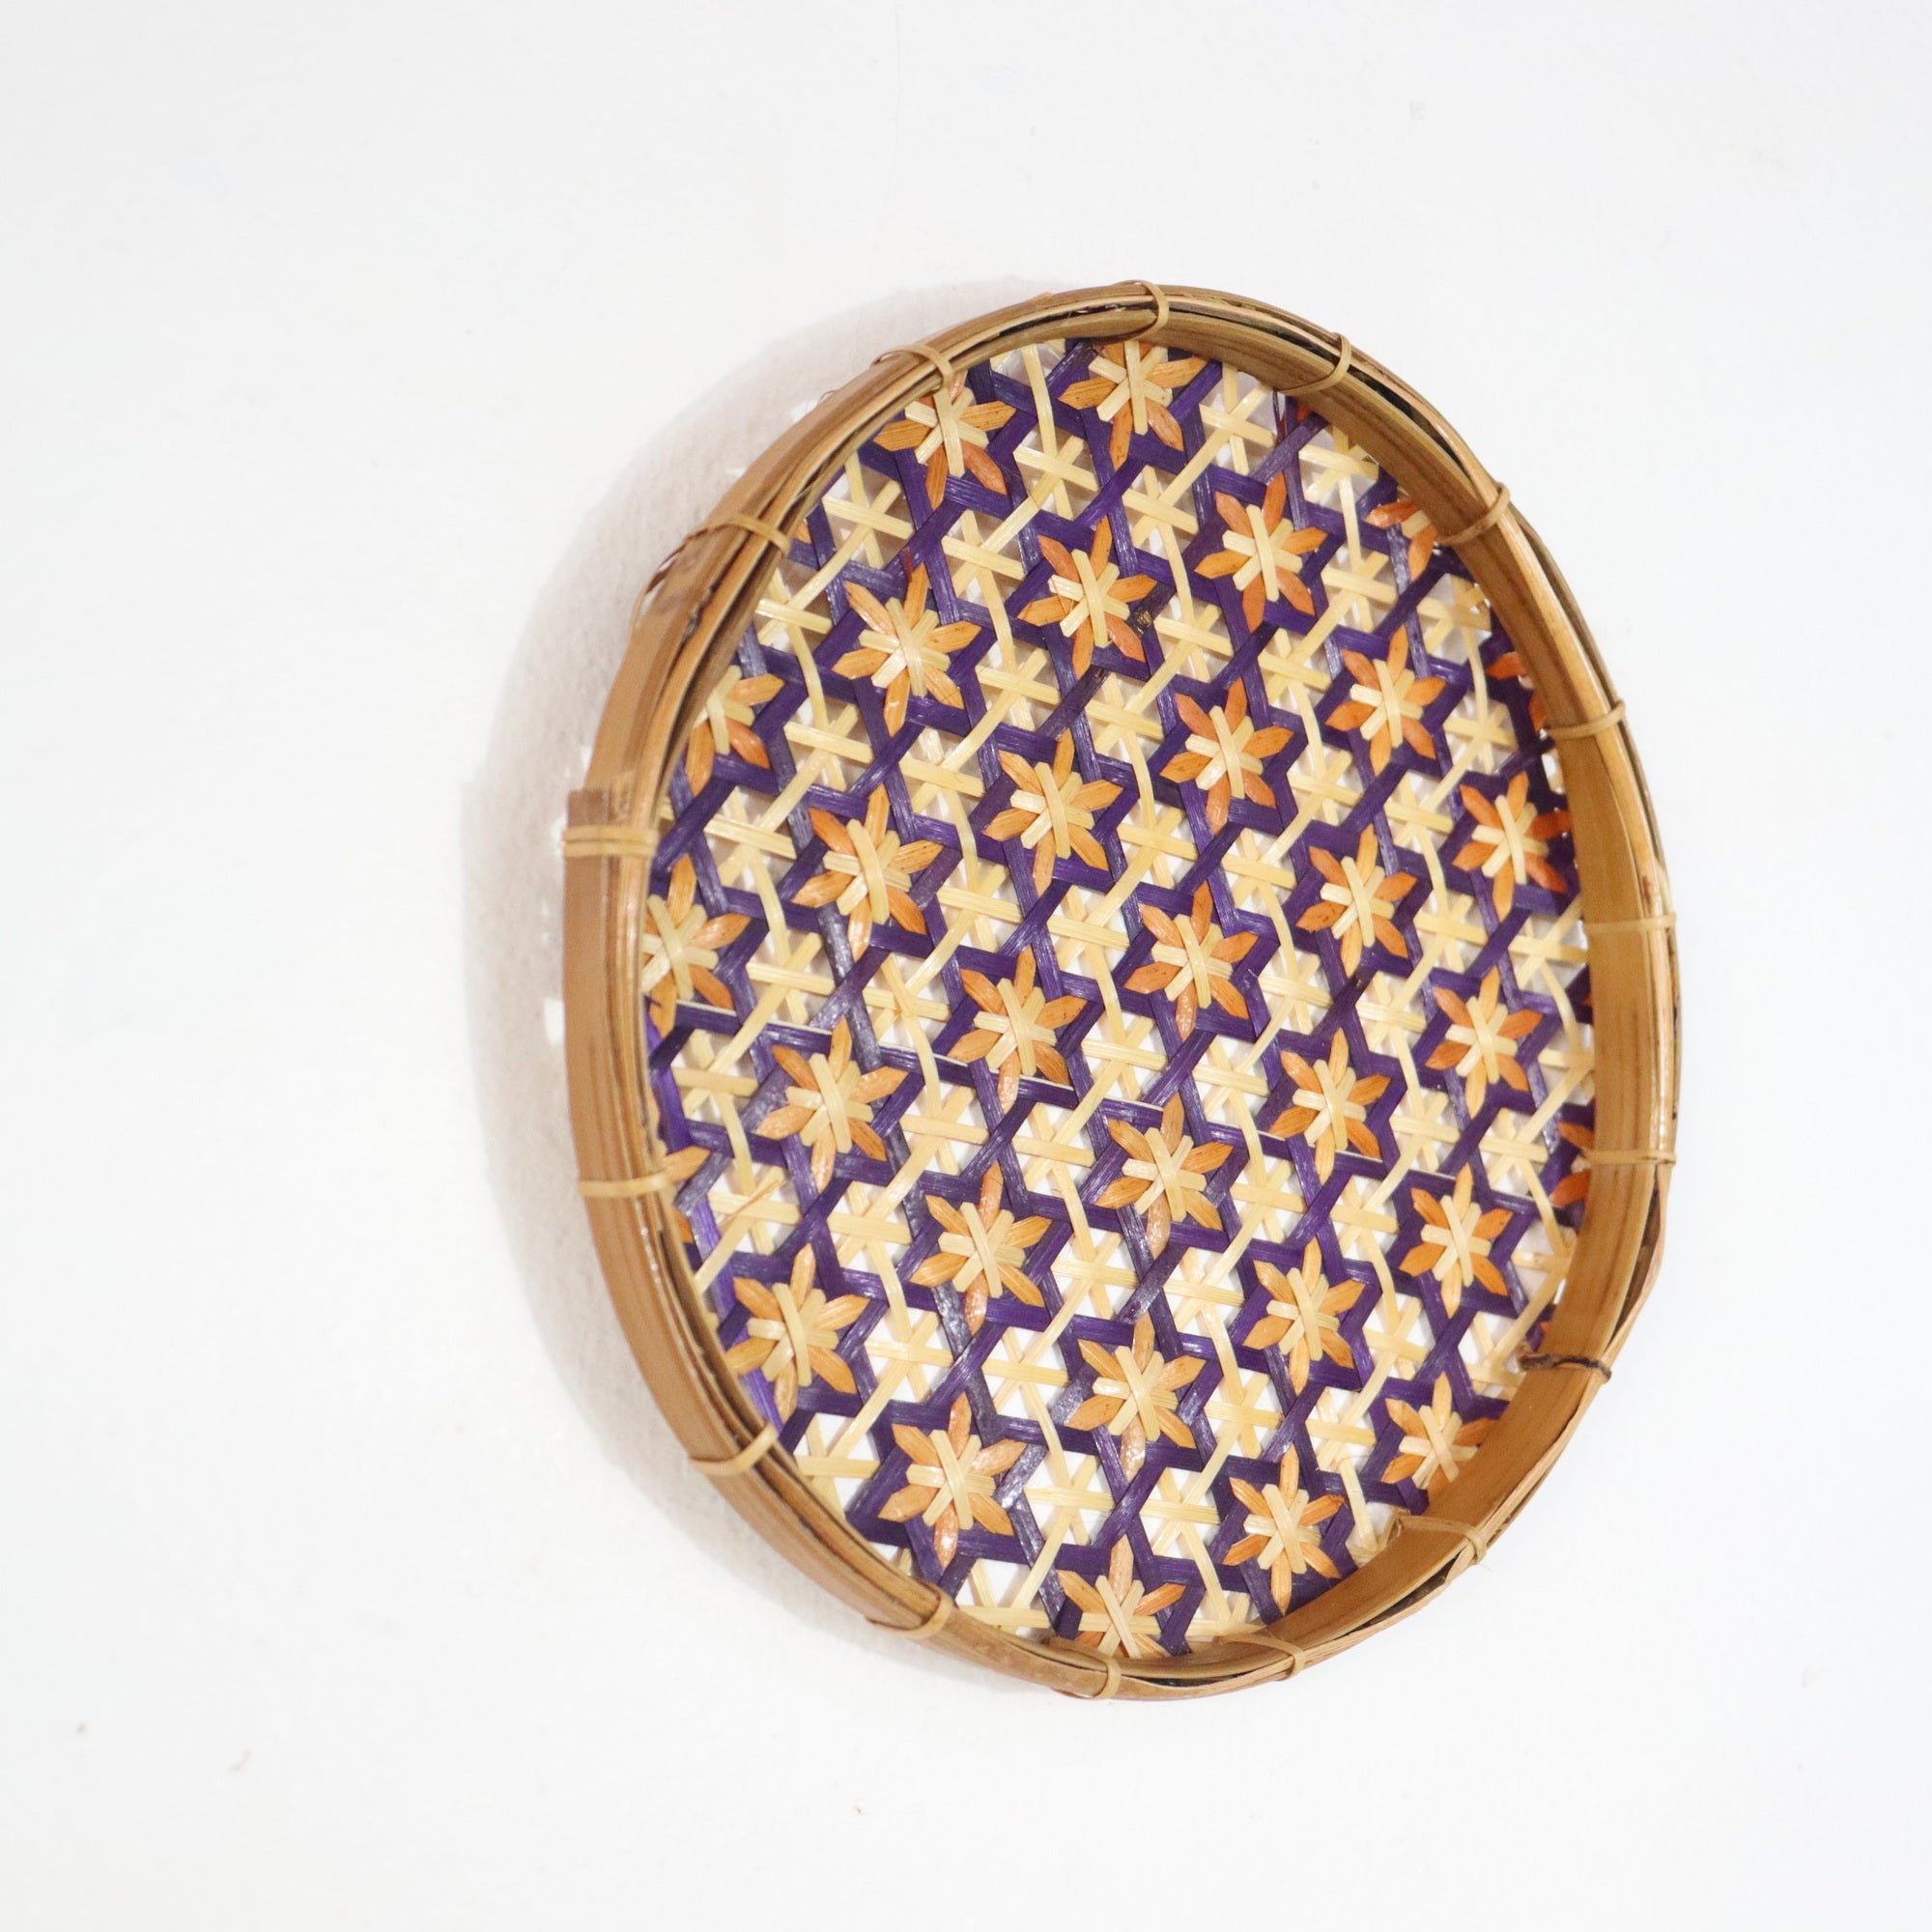 PA WA RA DA - DIY Wall Art Basket Decor 8 inches